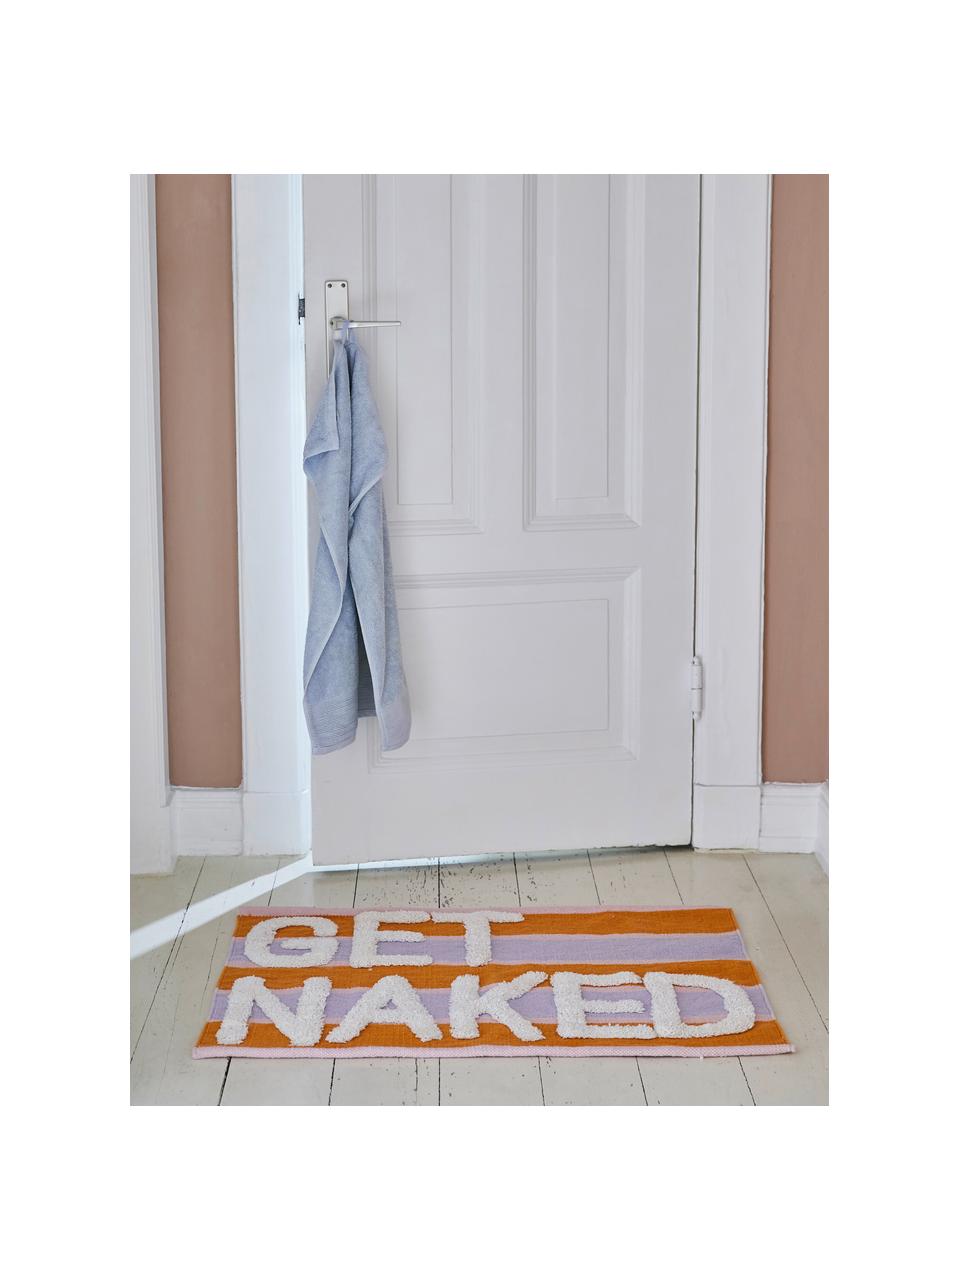 Tappetino da bagno con struttura alta-bassa Get Naked, 100% cotone, Multicolore, Larg. 55 x Lung. 80 cm